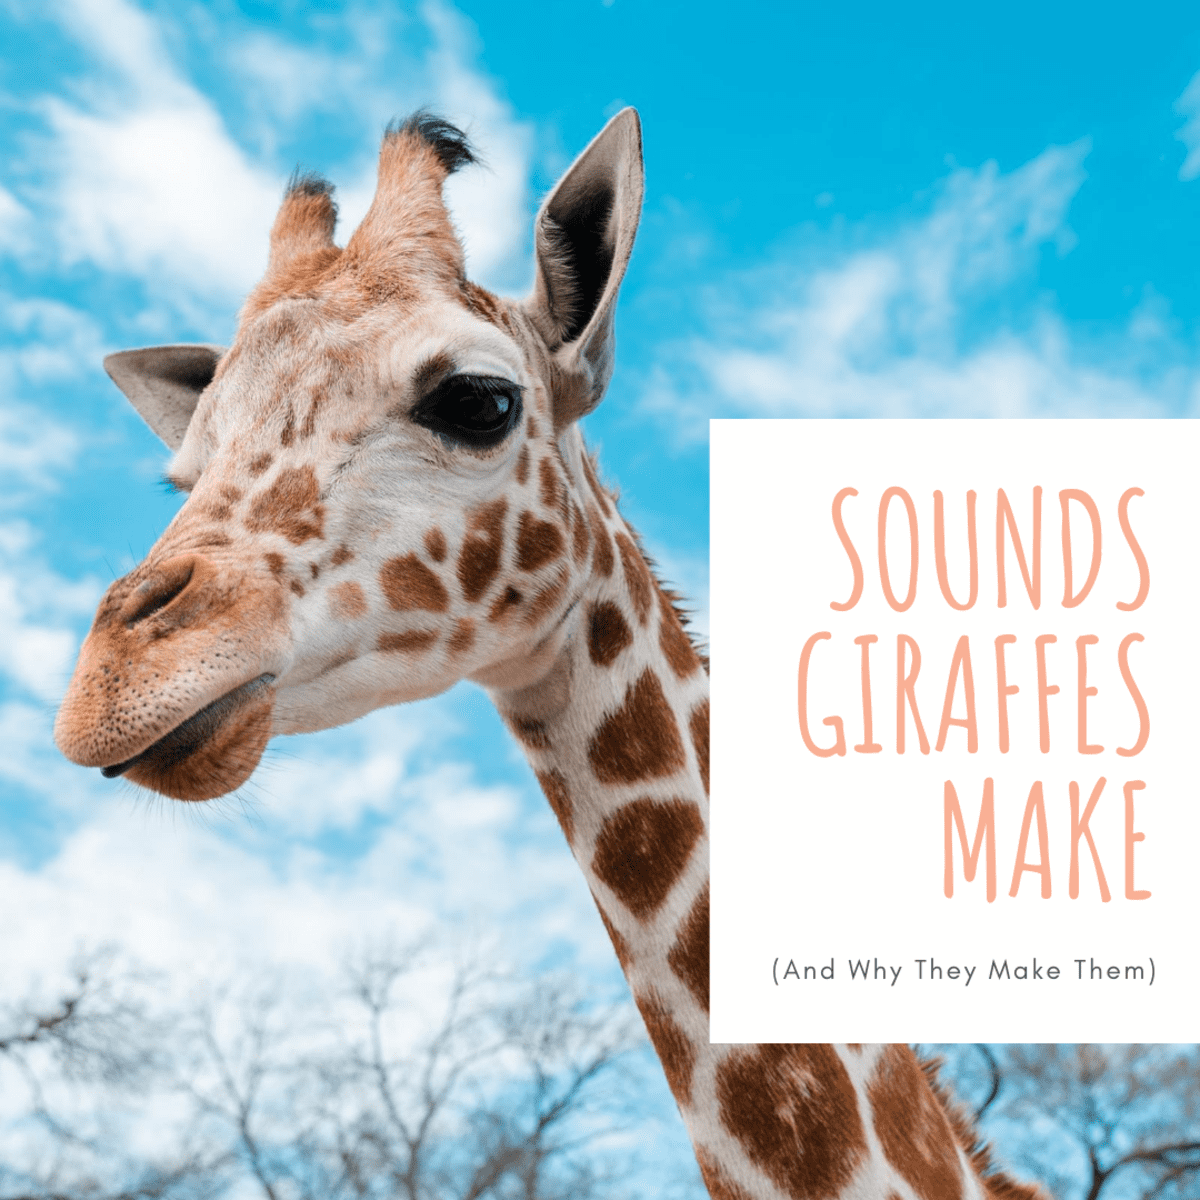 12 Sounds Giraffes Make - Owlcation